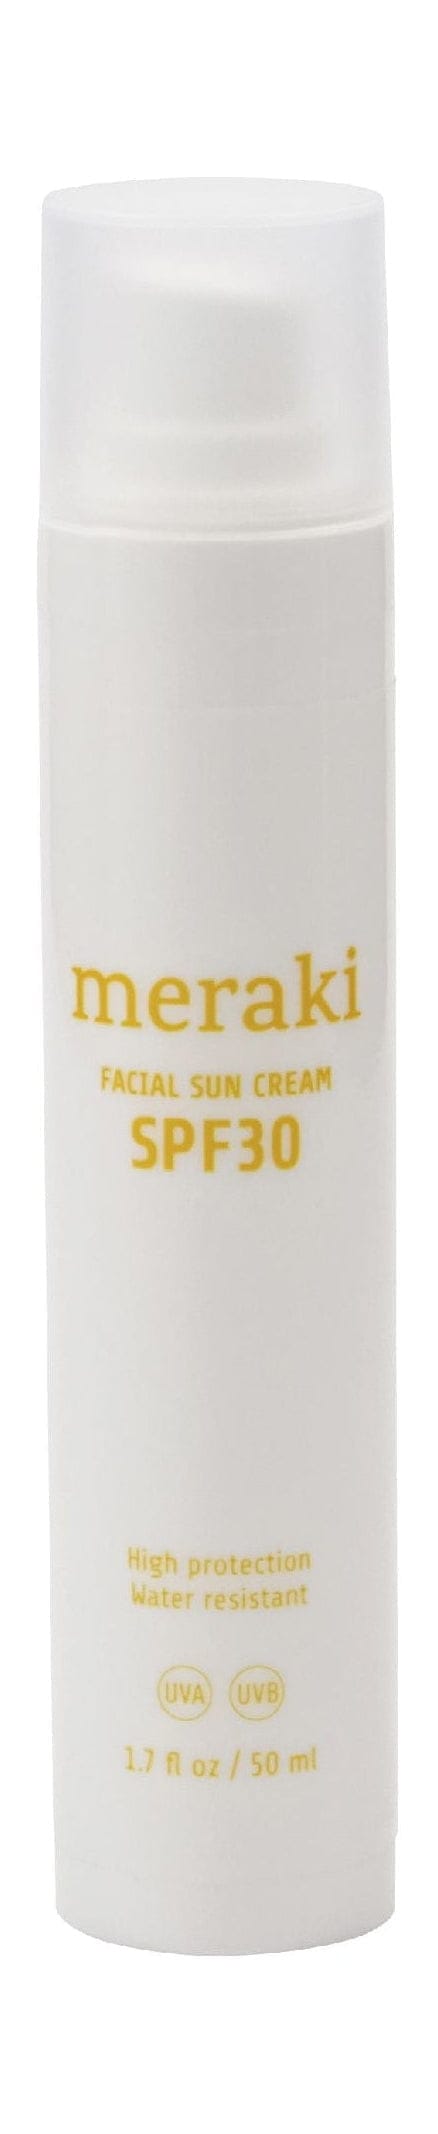 Meraki Facial Sun Cream 50 Ml, Mildly Scented